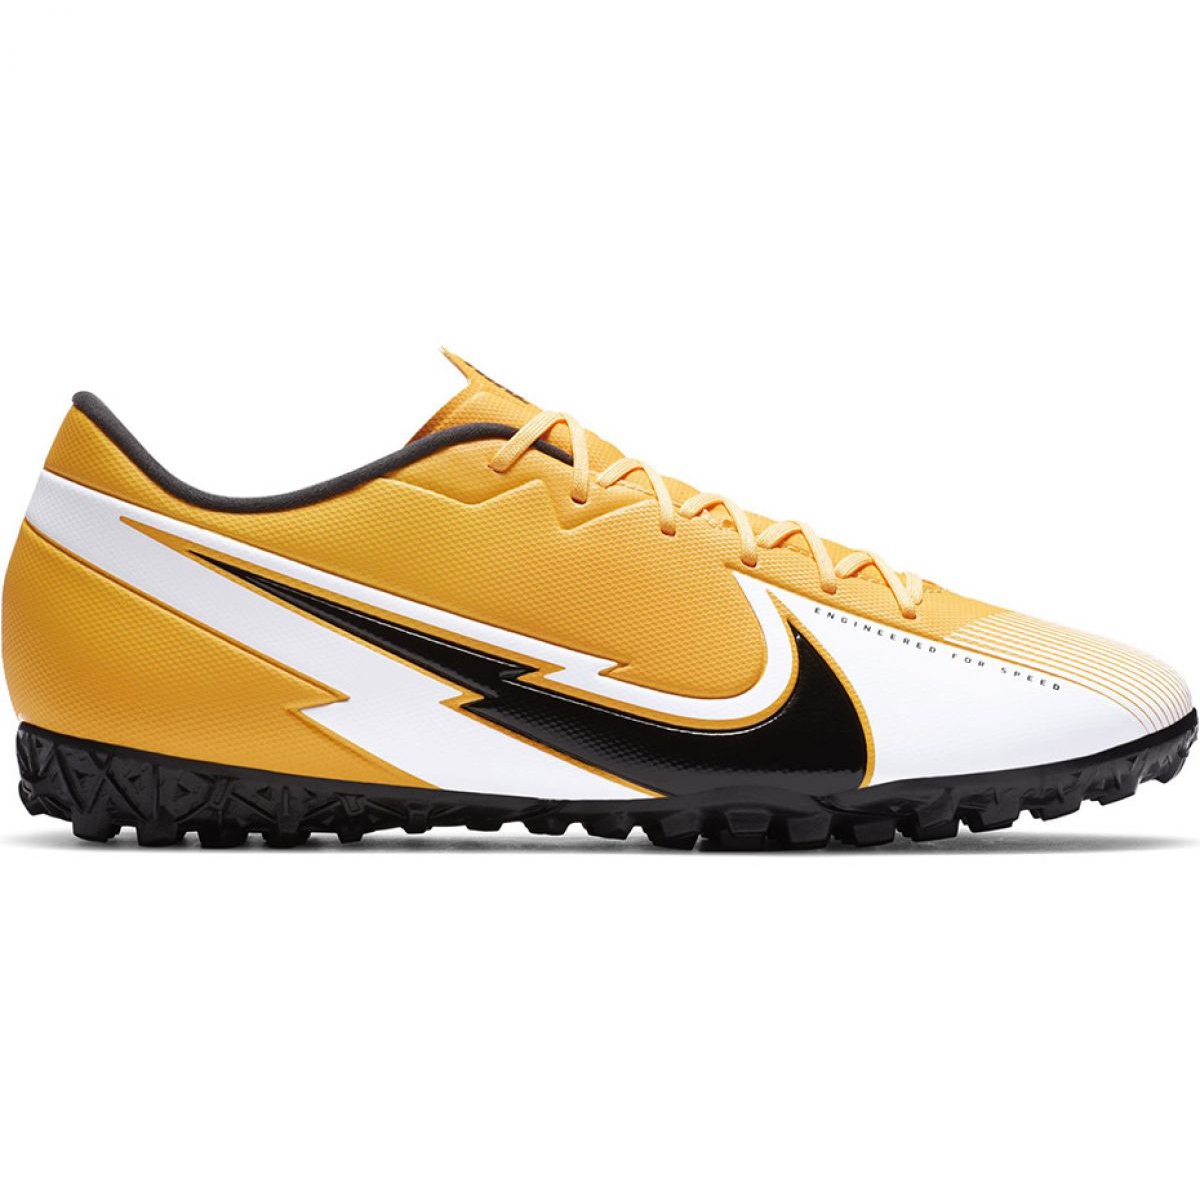 Buty piłkarskie Nike Mercurial Vapor 13 Academy Tf M AT7996 801 pomarańczowe